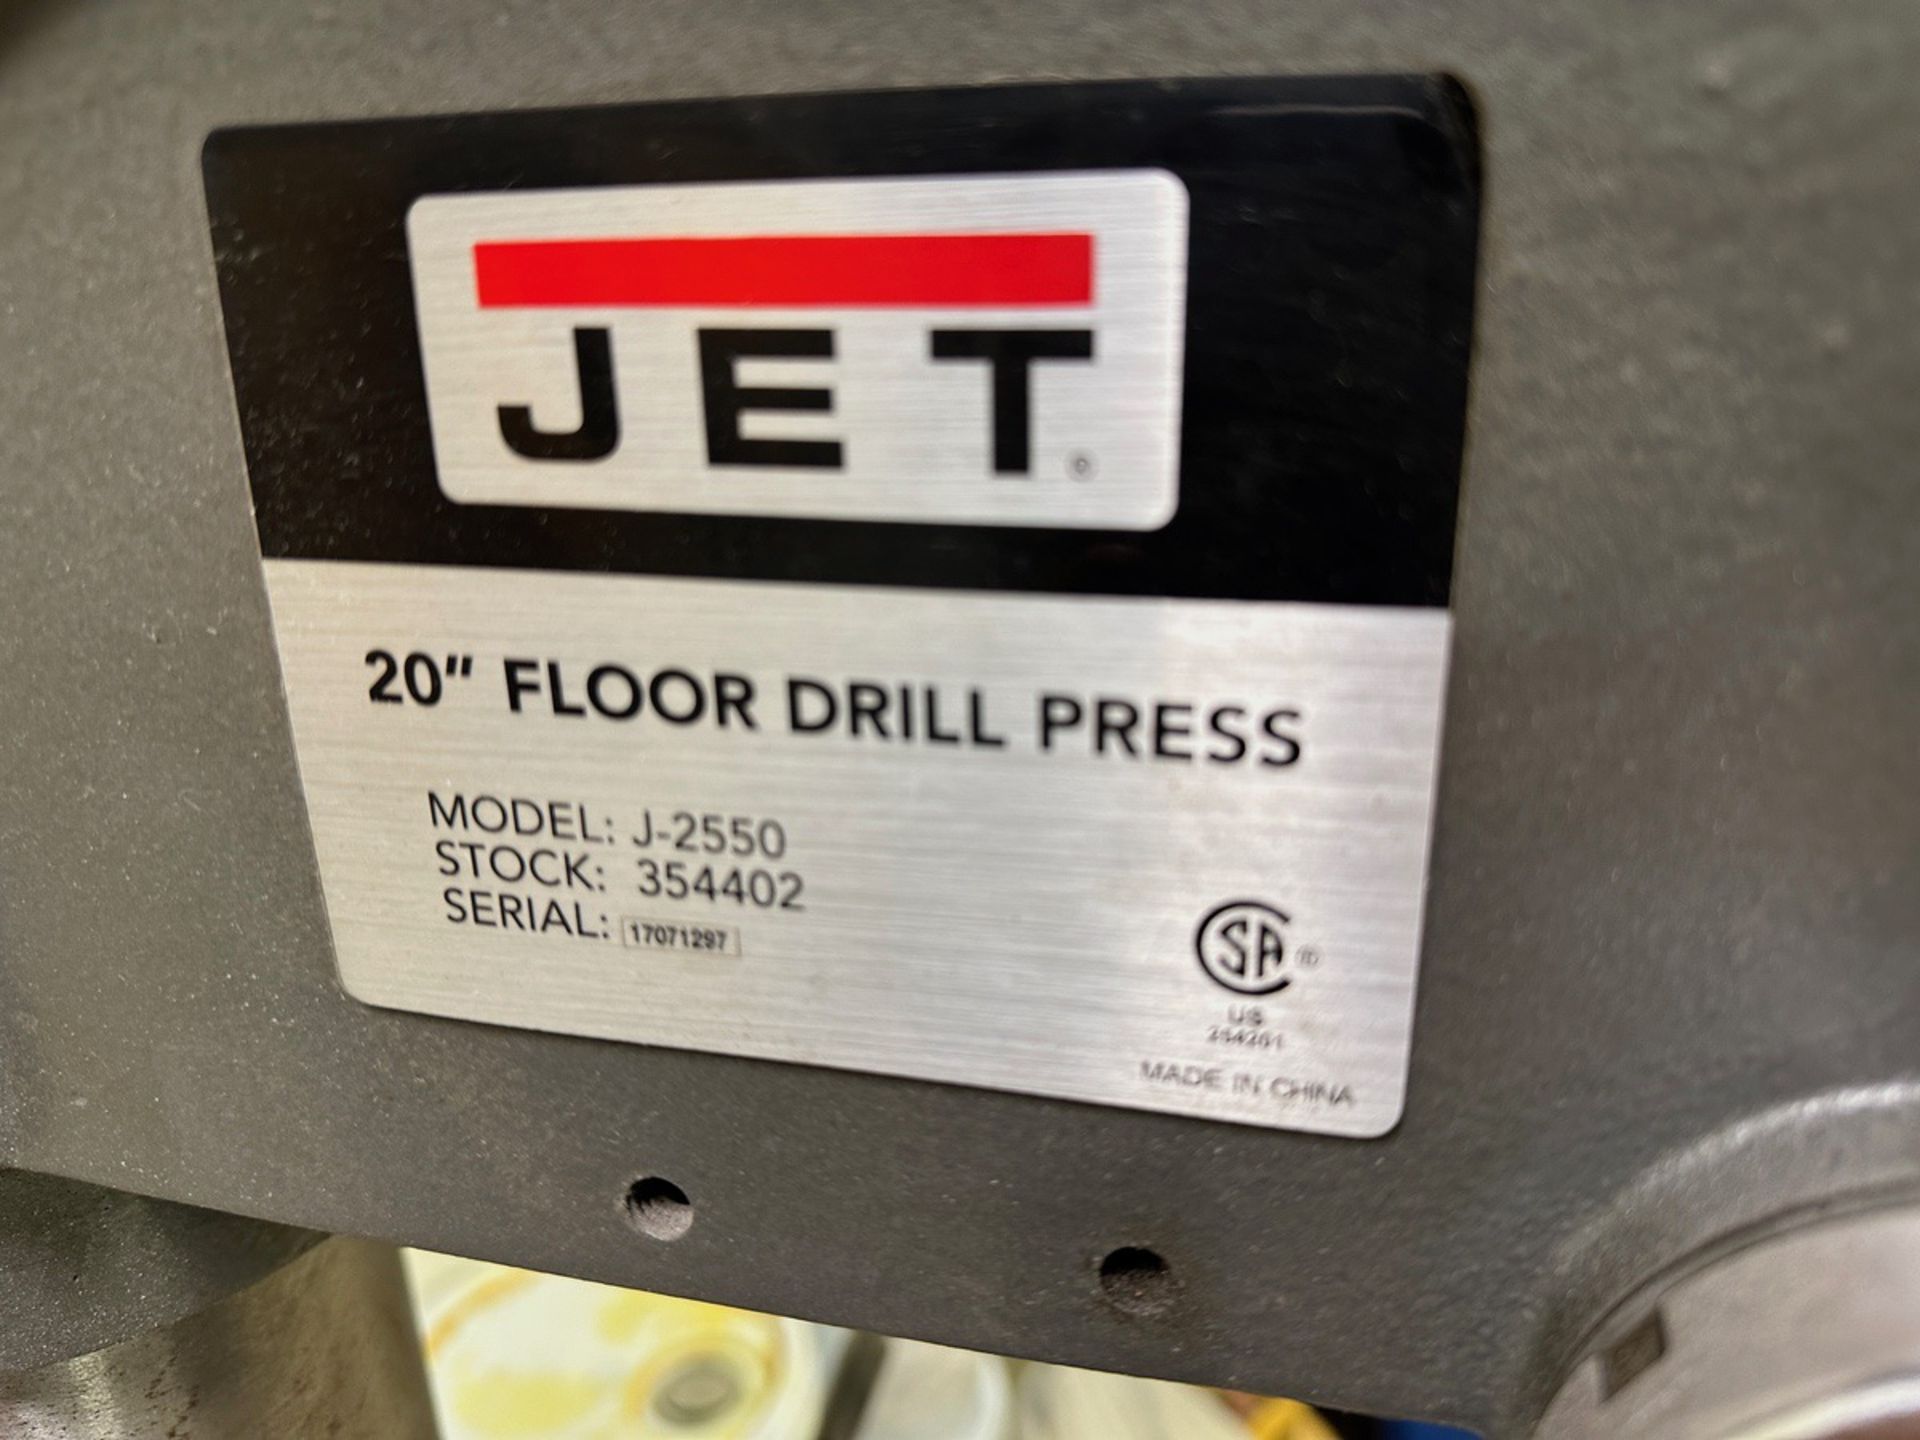 Jet 20" Floor Drill Press - Model J-2550 | Rig Fee $50 - Image 2 of 2